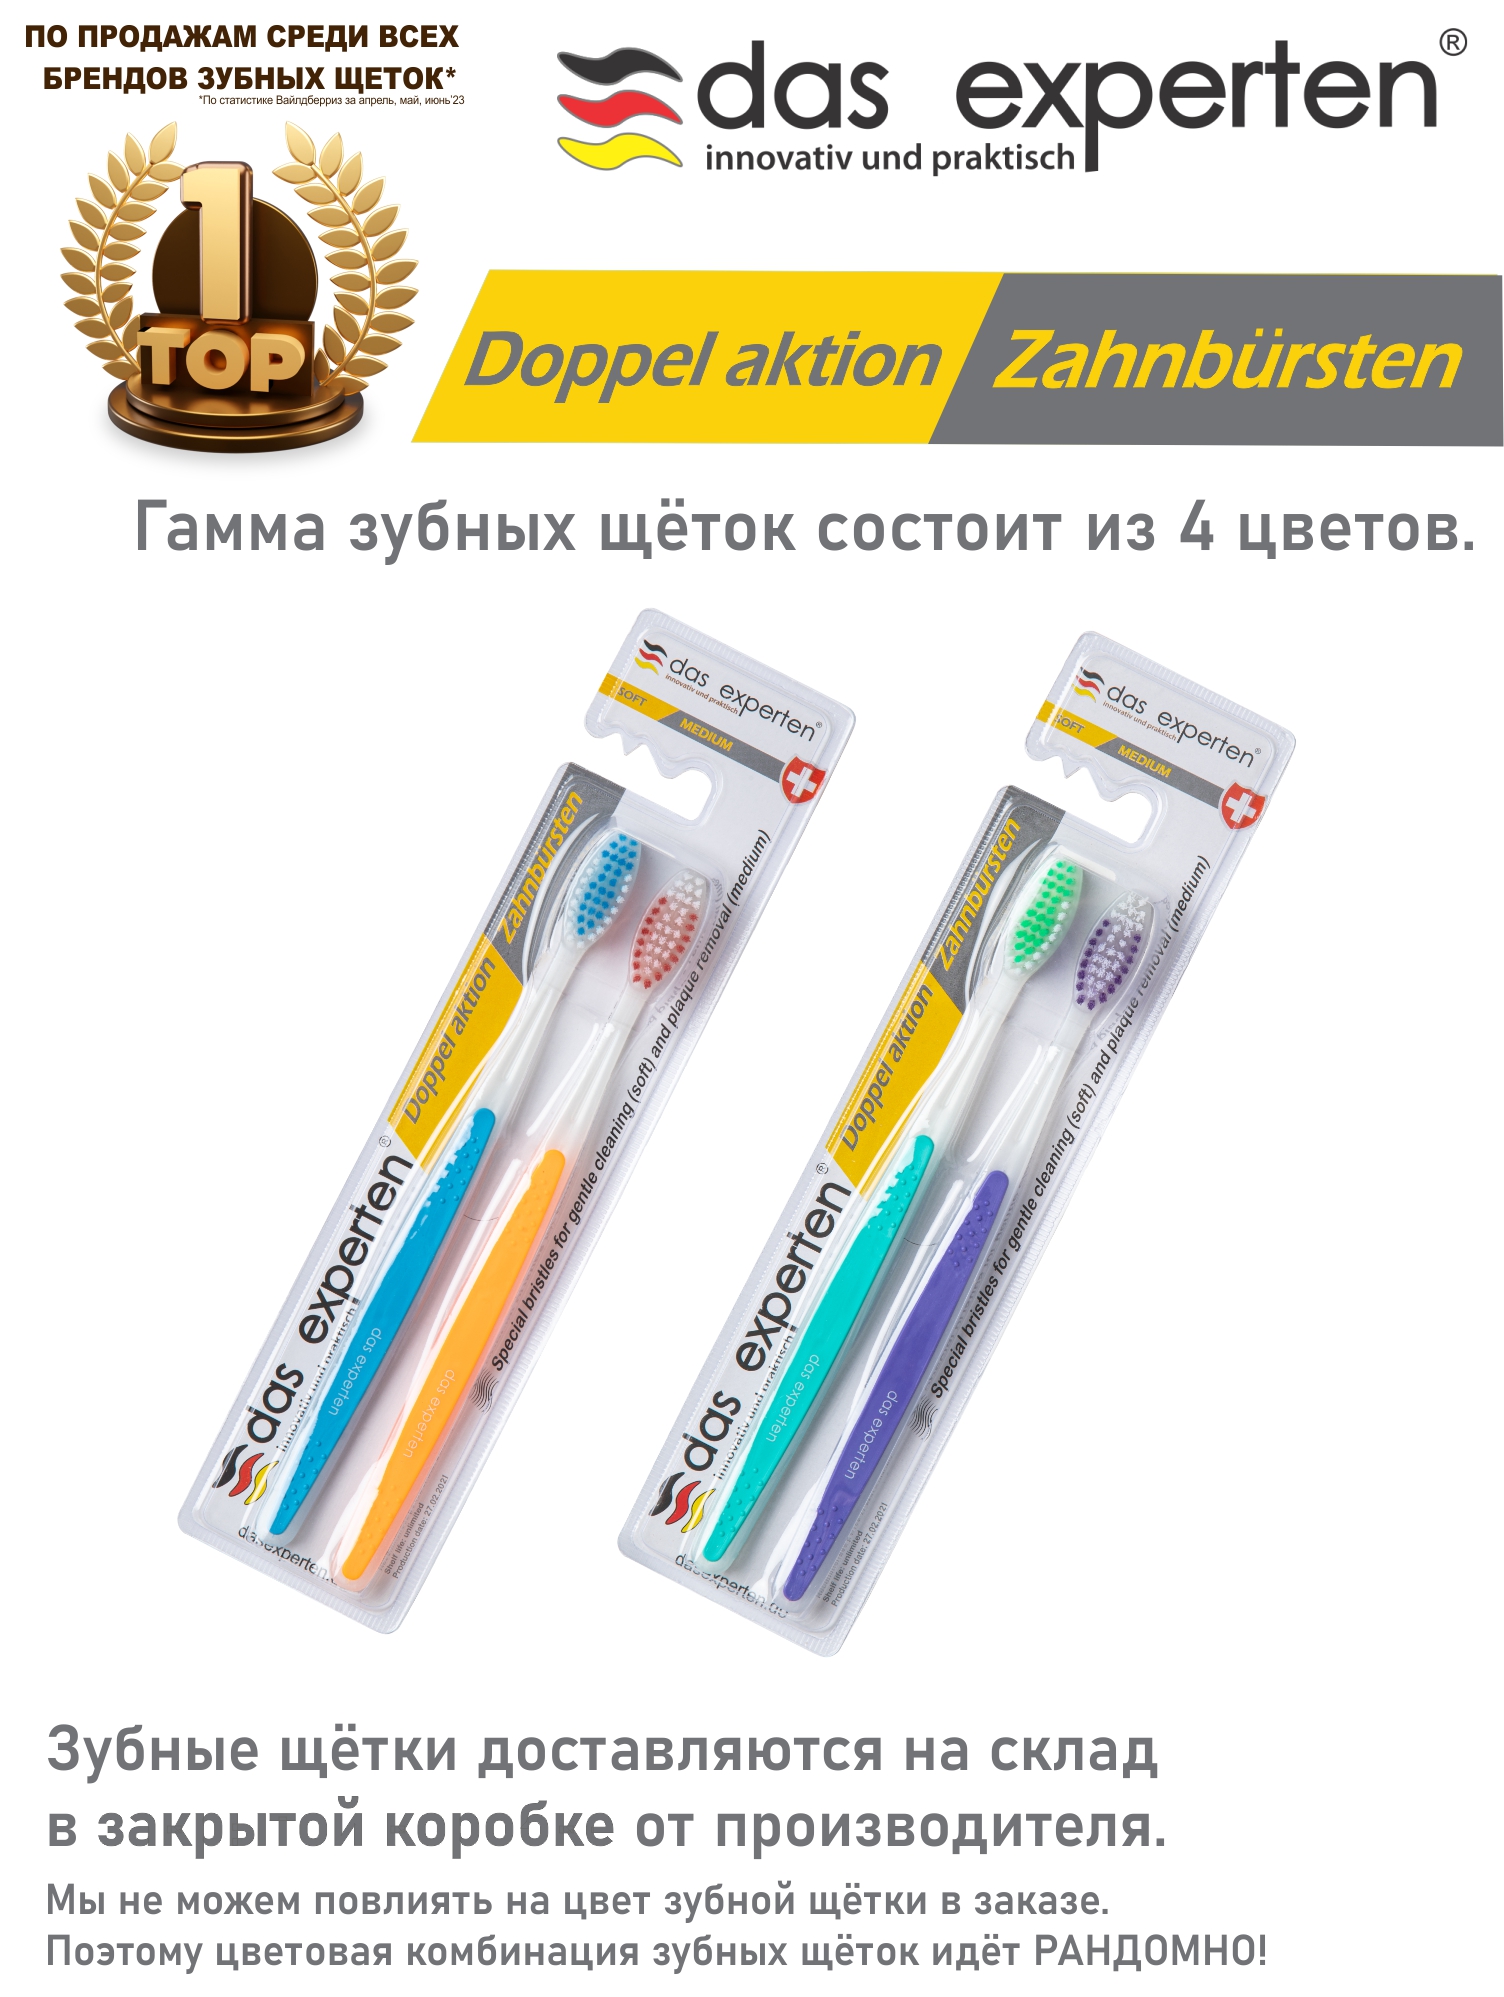 Зубные щетки Das Experten DOPPEL AKTION 2 зубные щетки azotii для влюбленных 2 шт